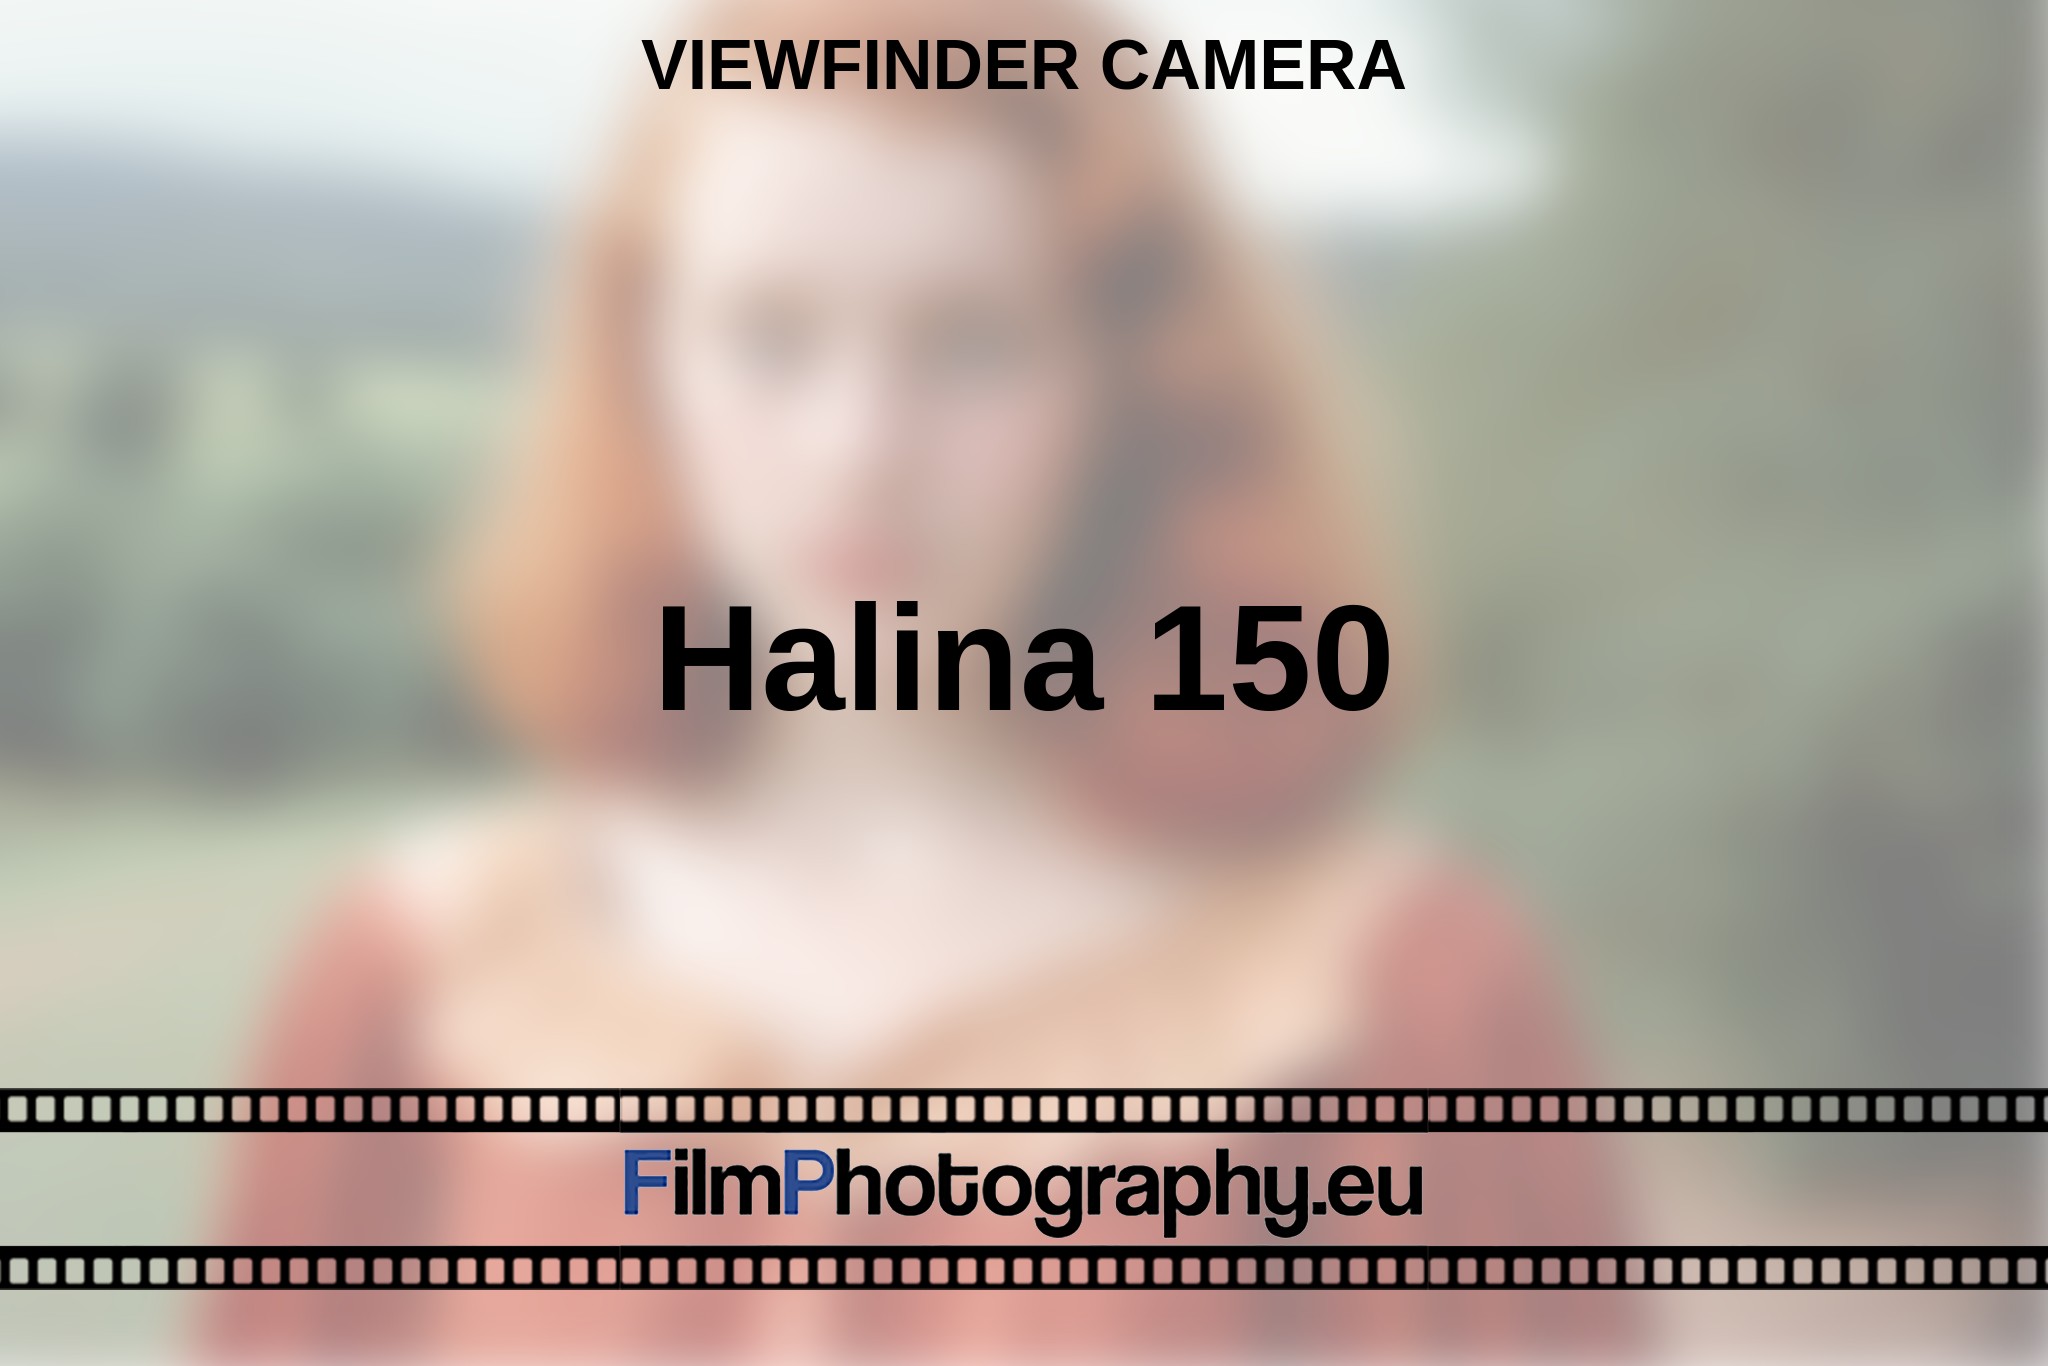 halina-150-viewfinder-camera-en-bnv.jpg